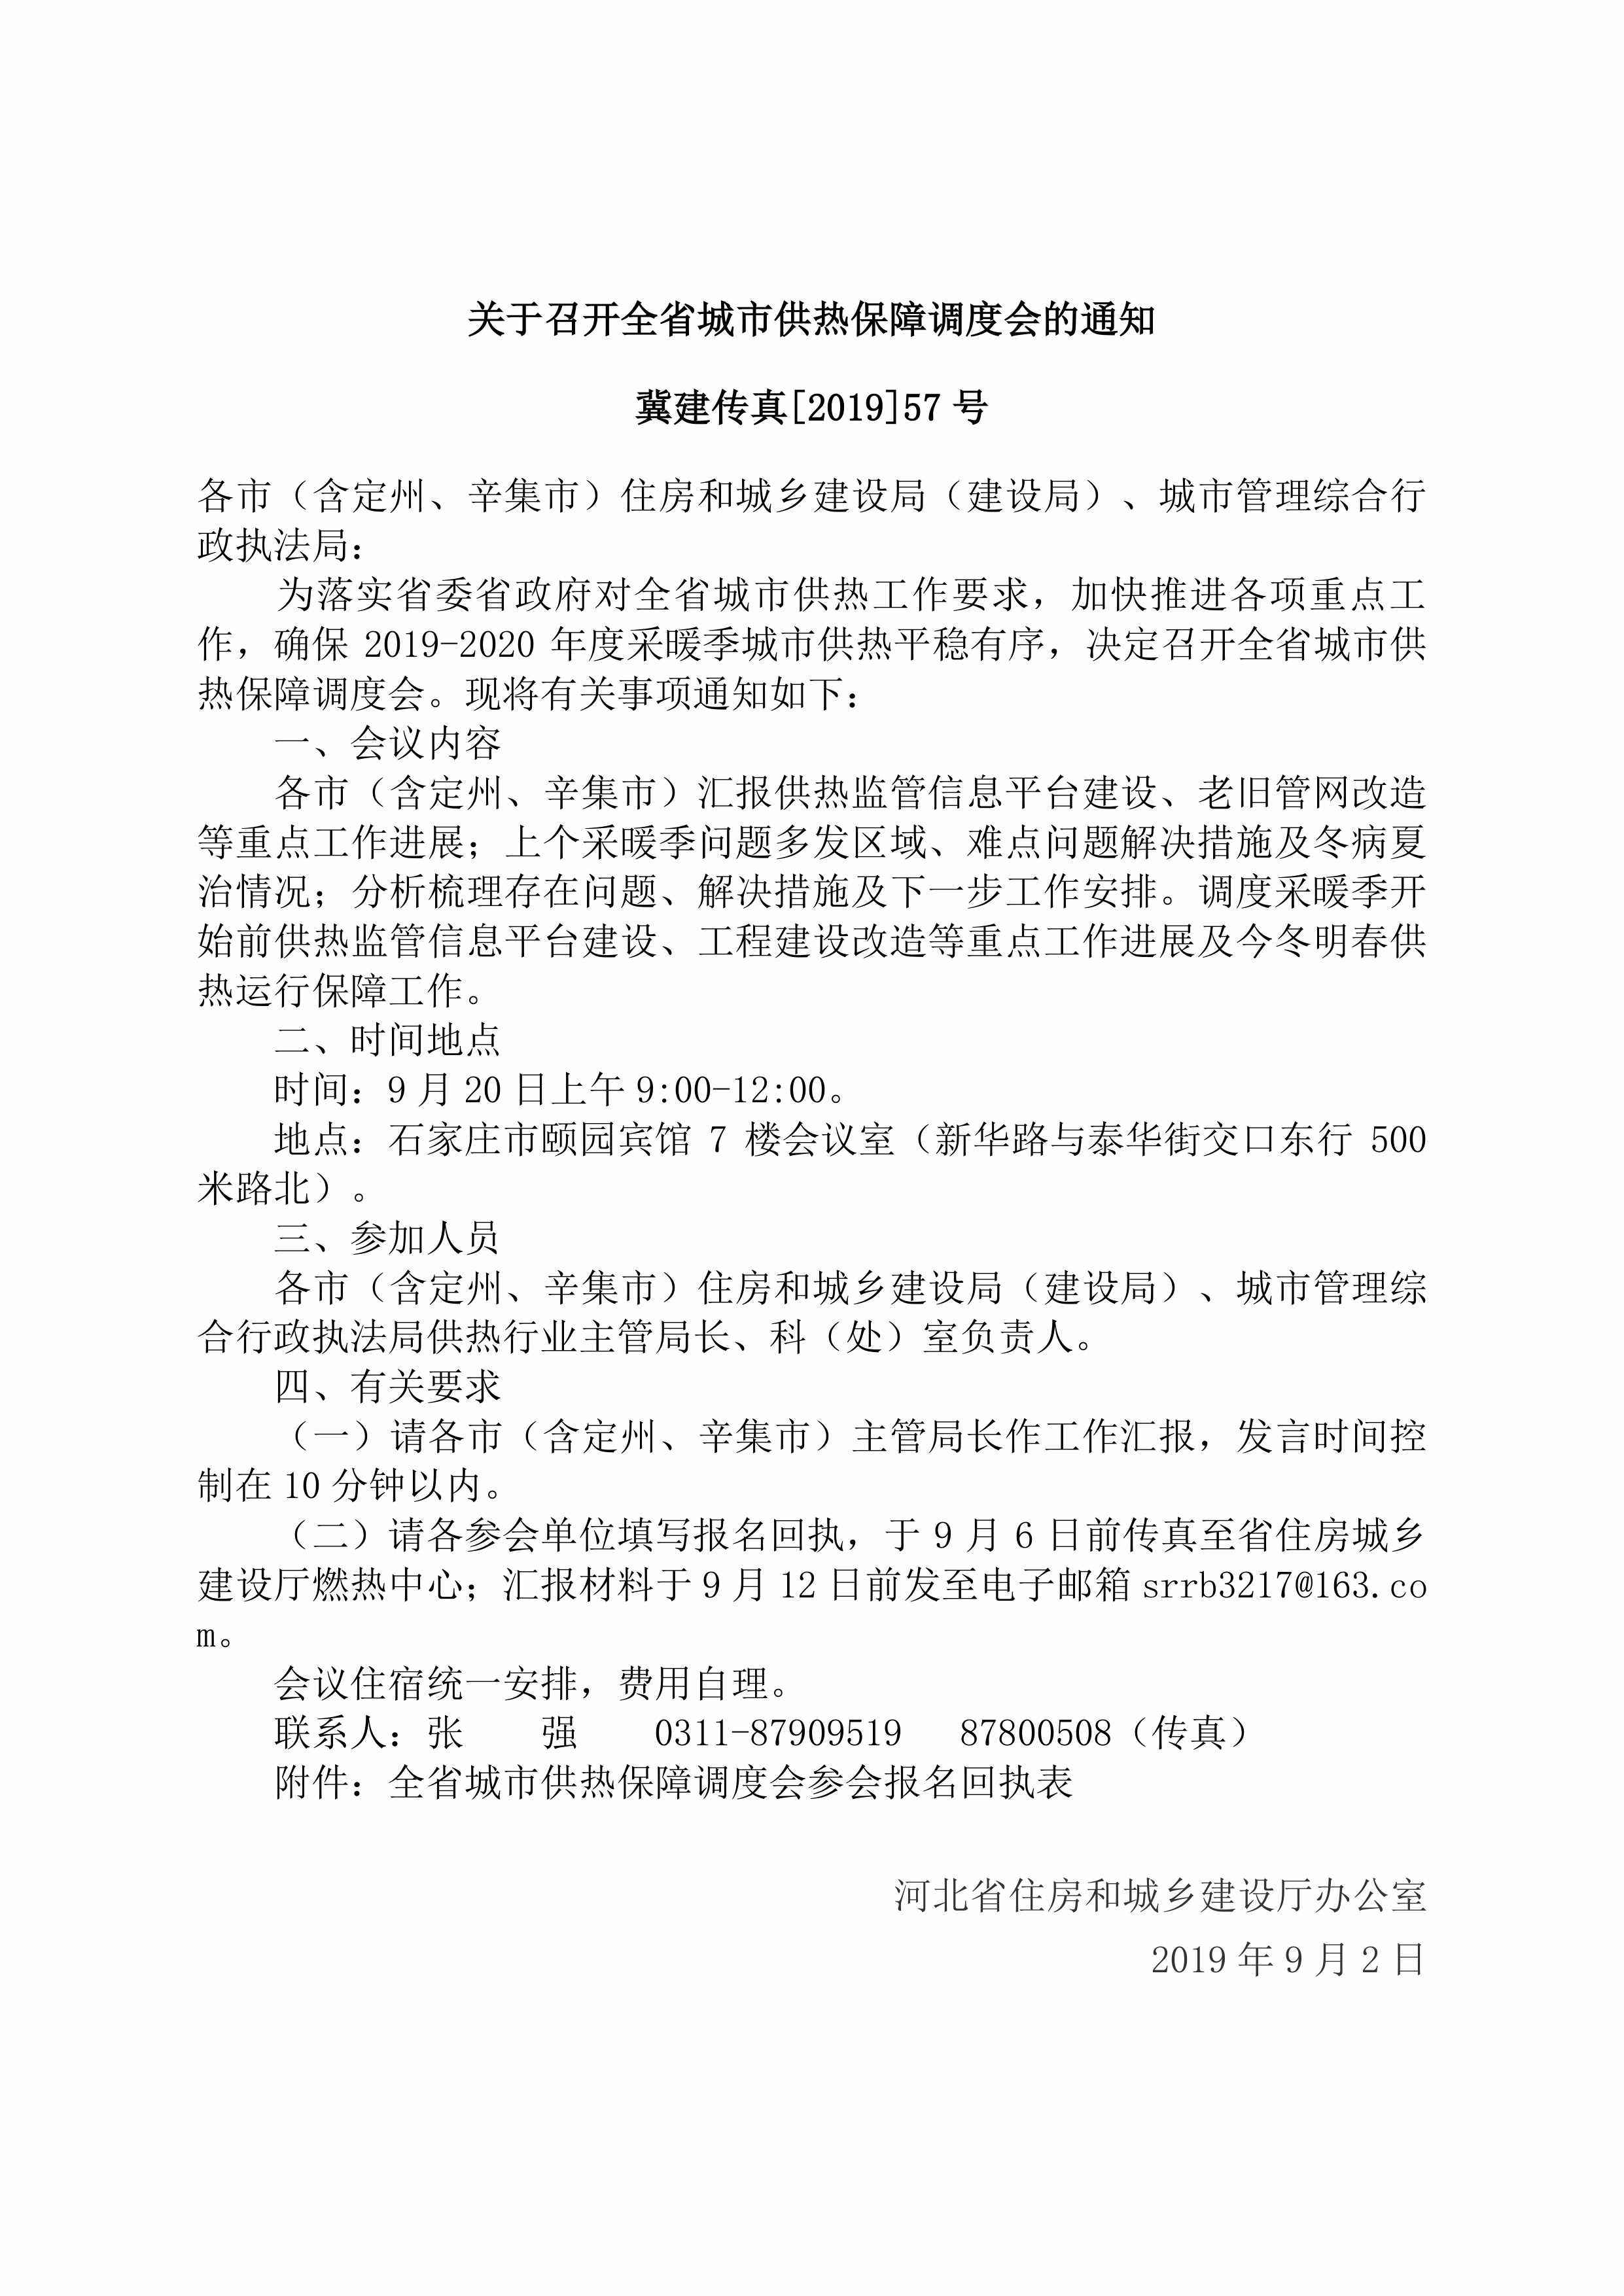 冀建传真[2019]57号：关于召开全省城市供热保障调度会的通知